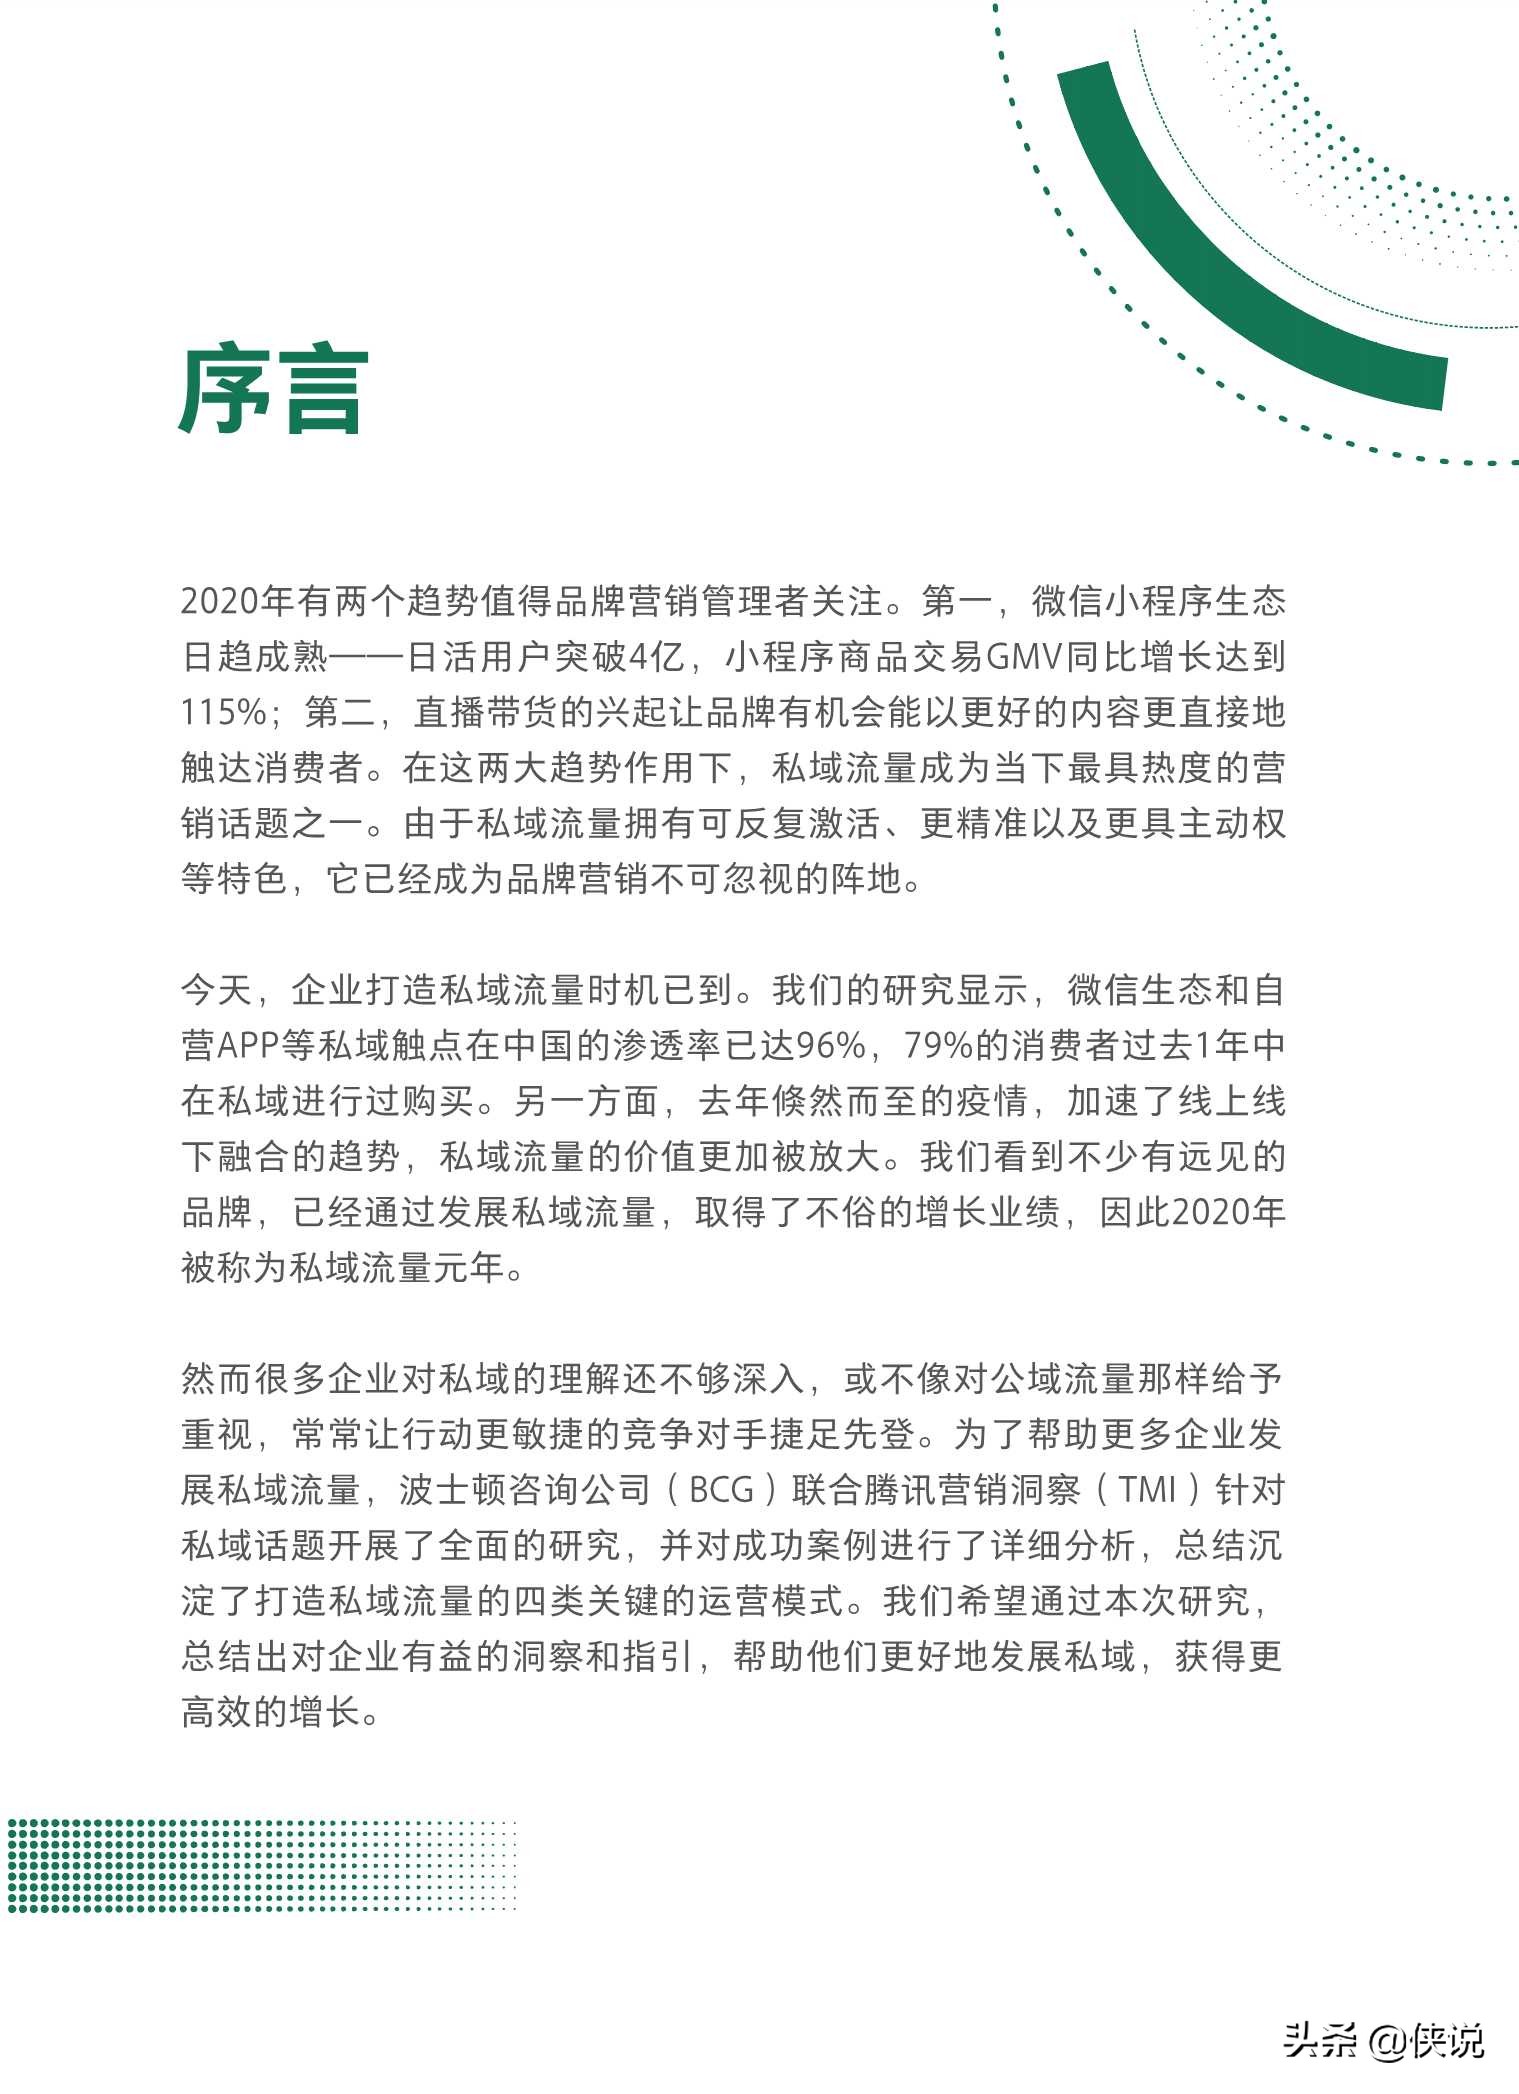 抢滩私域新战场：2021中国私域营销白皮书